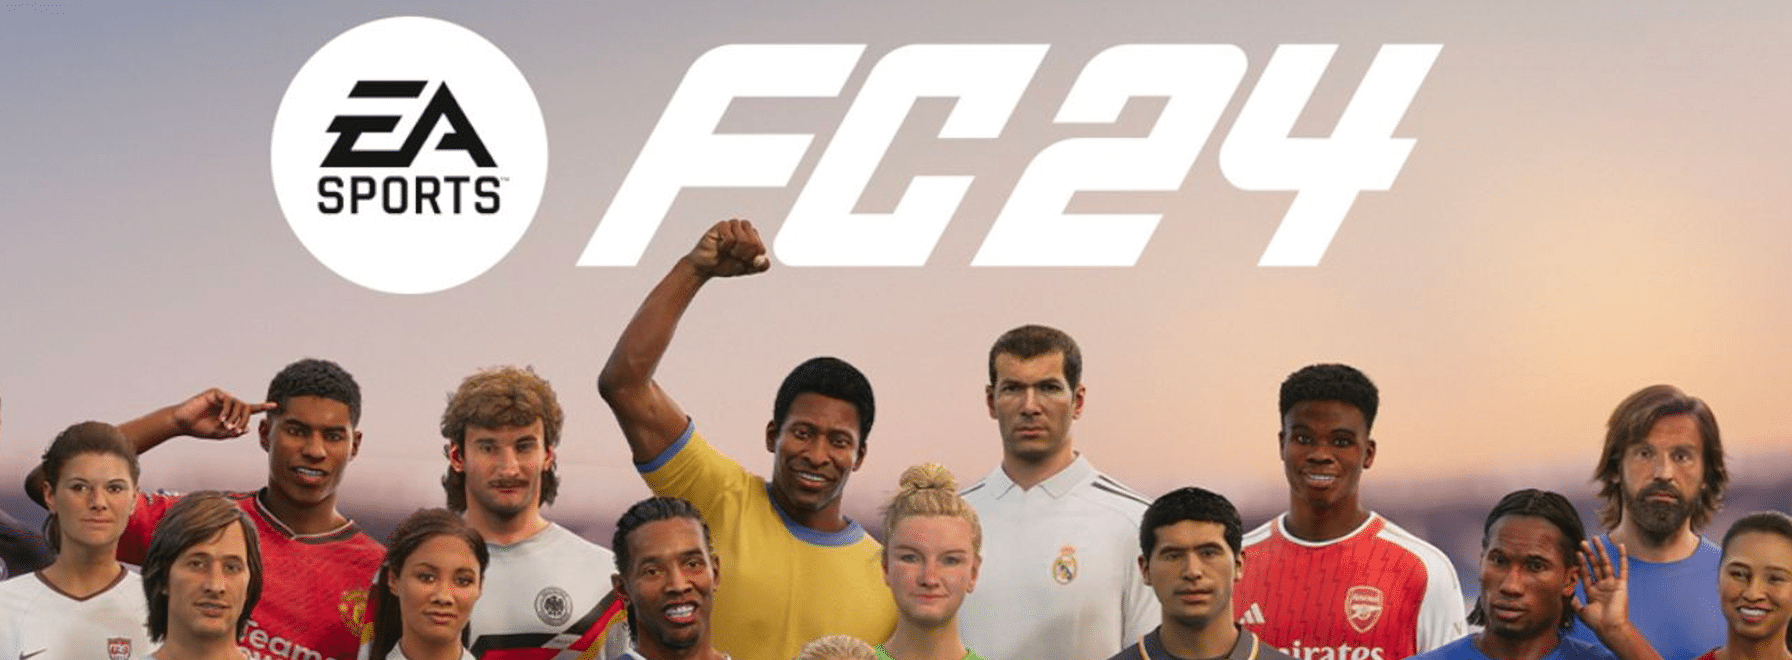 Tente de gagner EA Sports FC 24 sur PS5 !